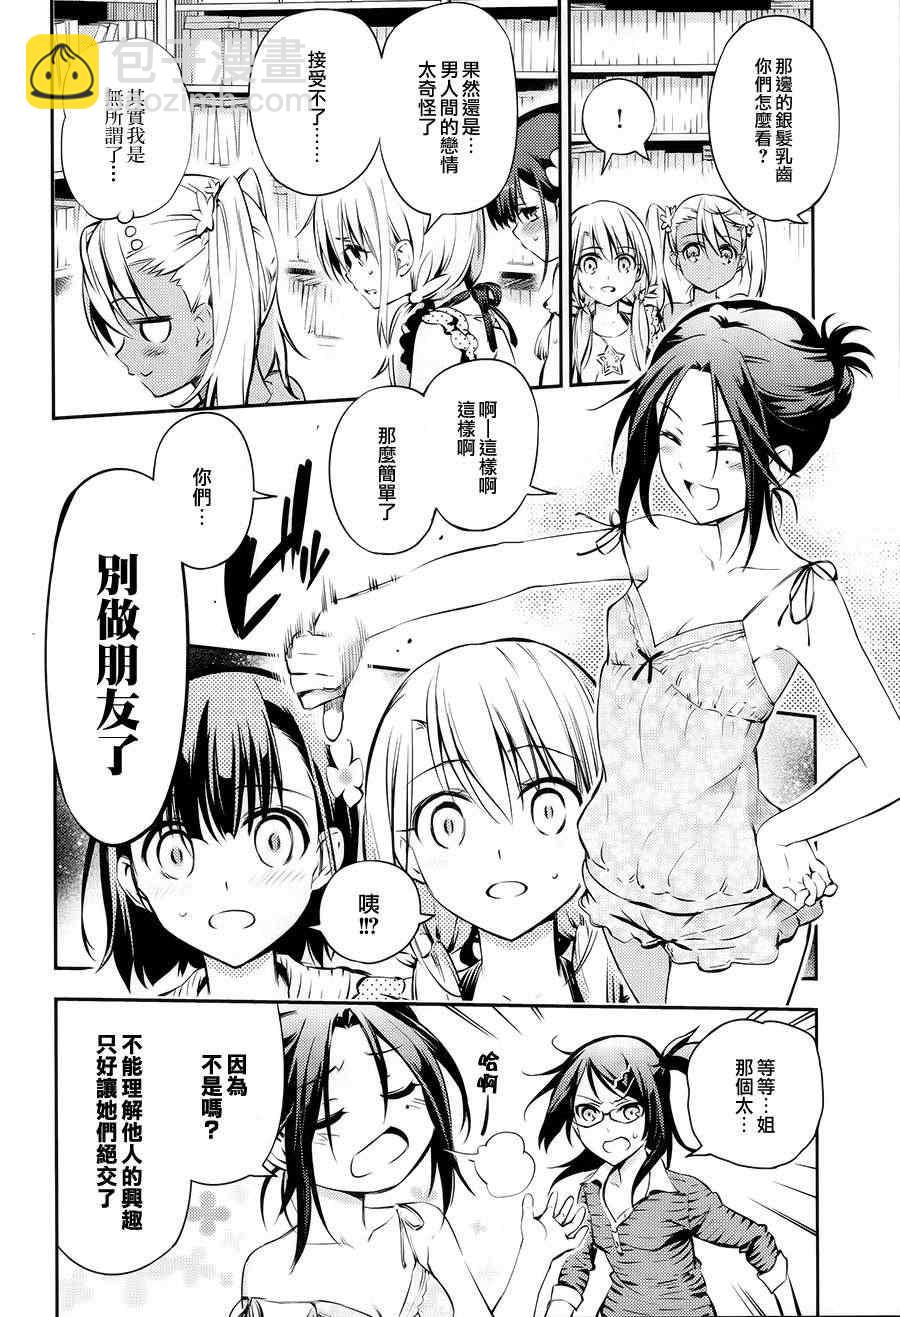 魔法少女☆伊莉雅3Rei - Fate kaleid liner 番外篇 - 5